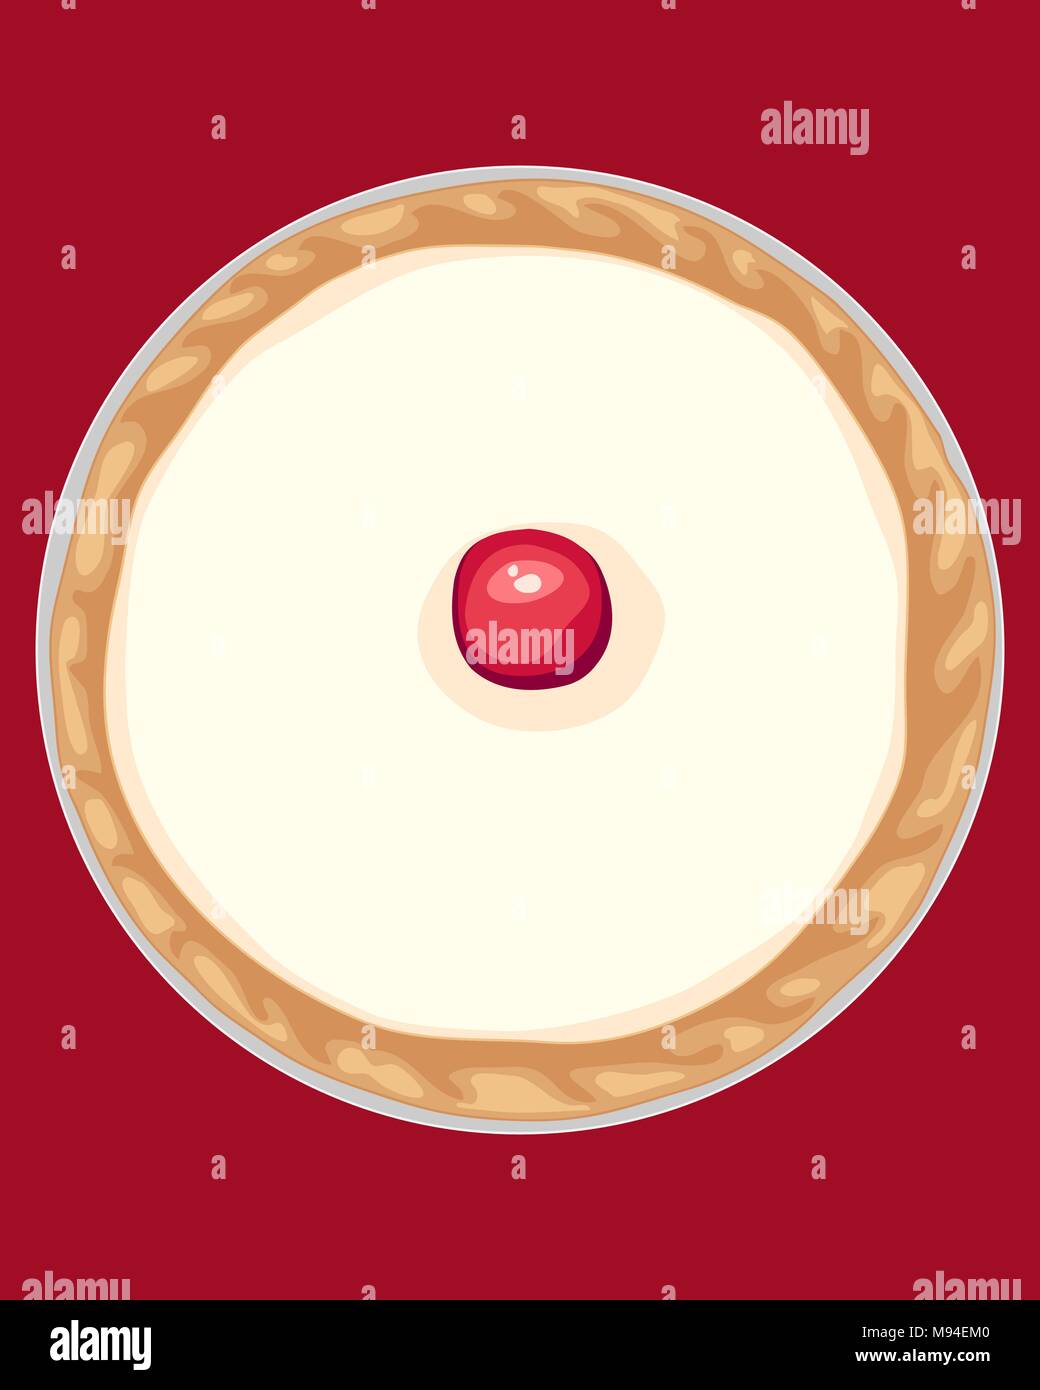 Un vecteur illustration au format eps d'un individu Bakewell tart cherry rouge avec du fondant glaçage blanc et doré pâte dans un emballage d'aluminium Illustration de Vecteur